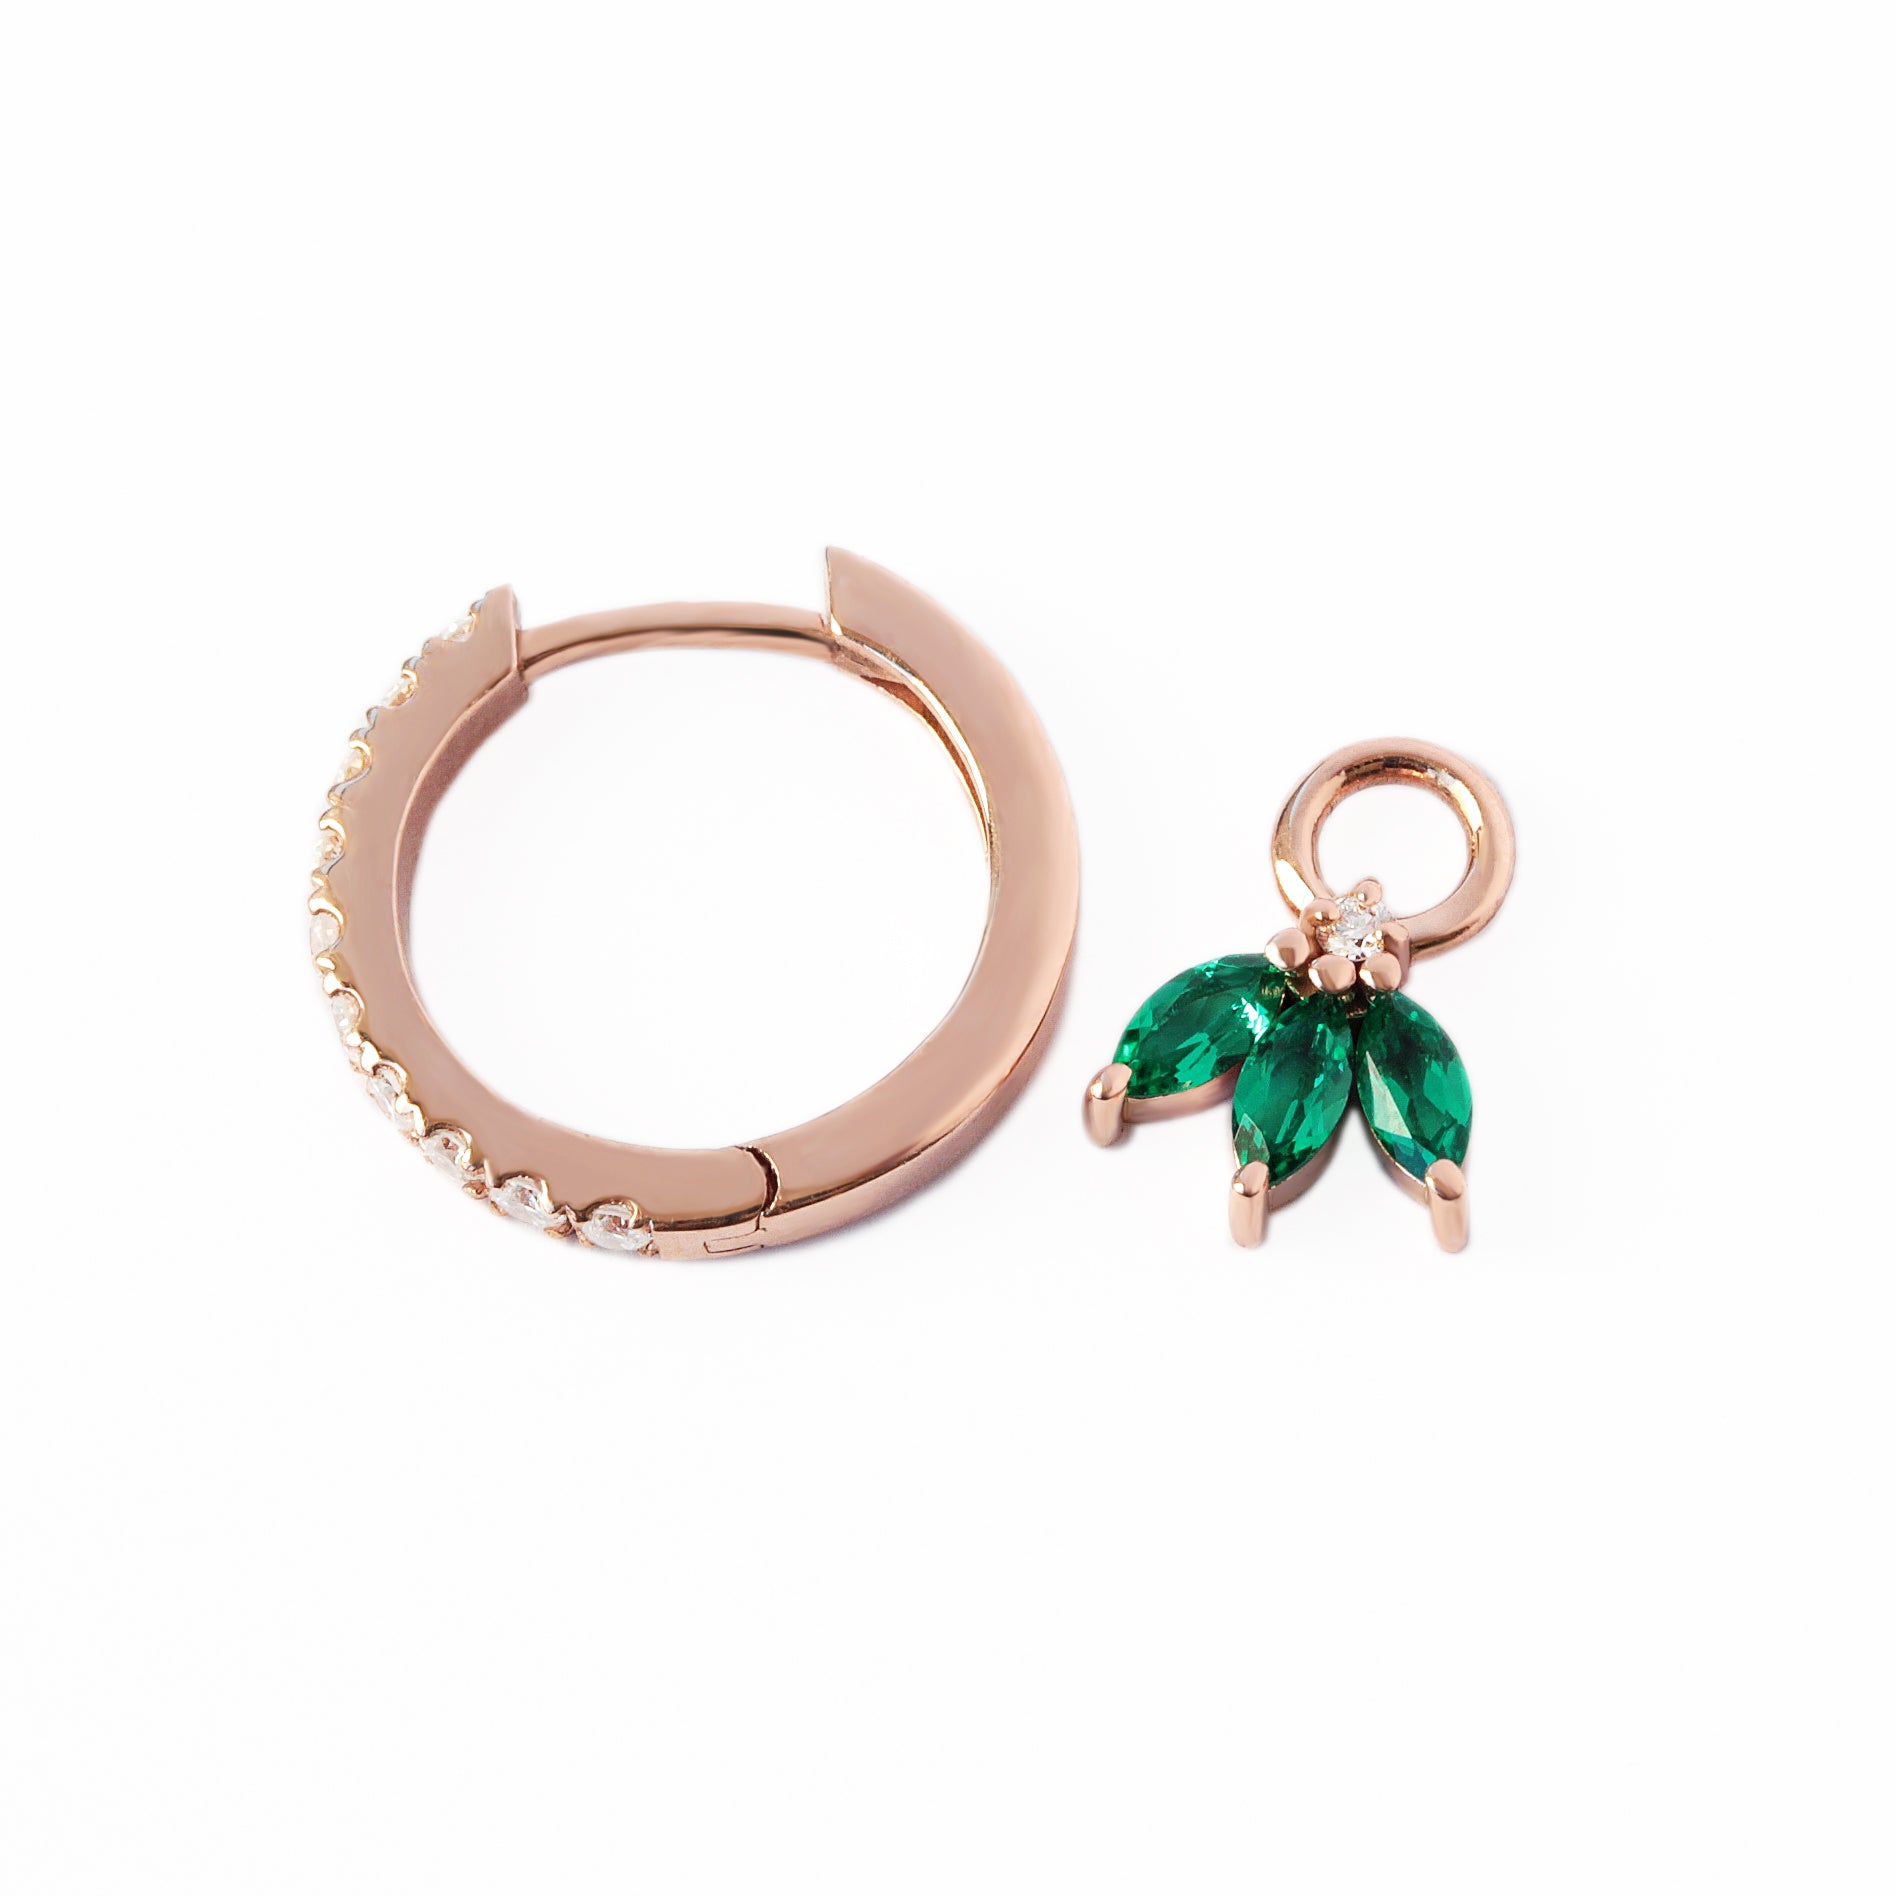 Small hoop with marquise drop huggie earrings